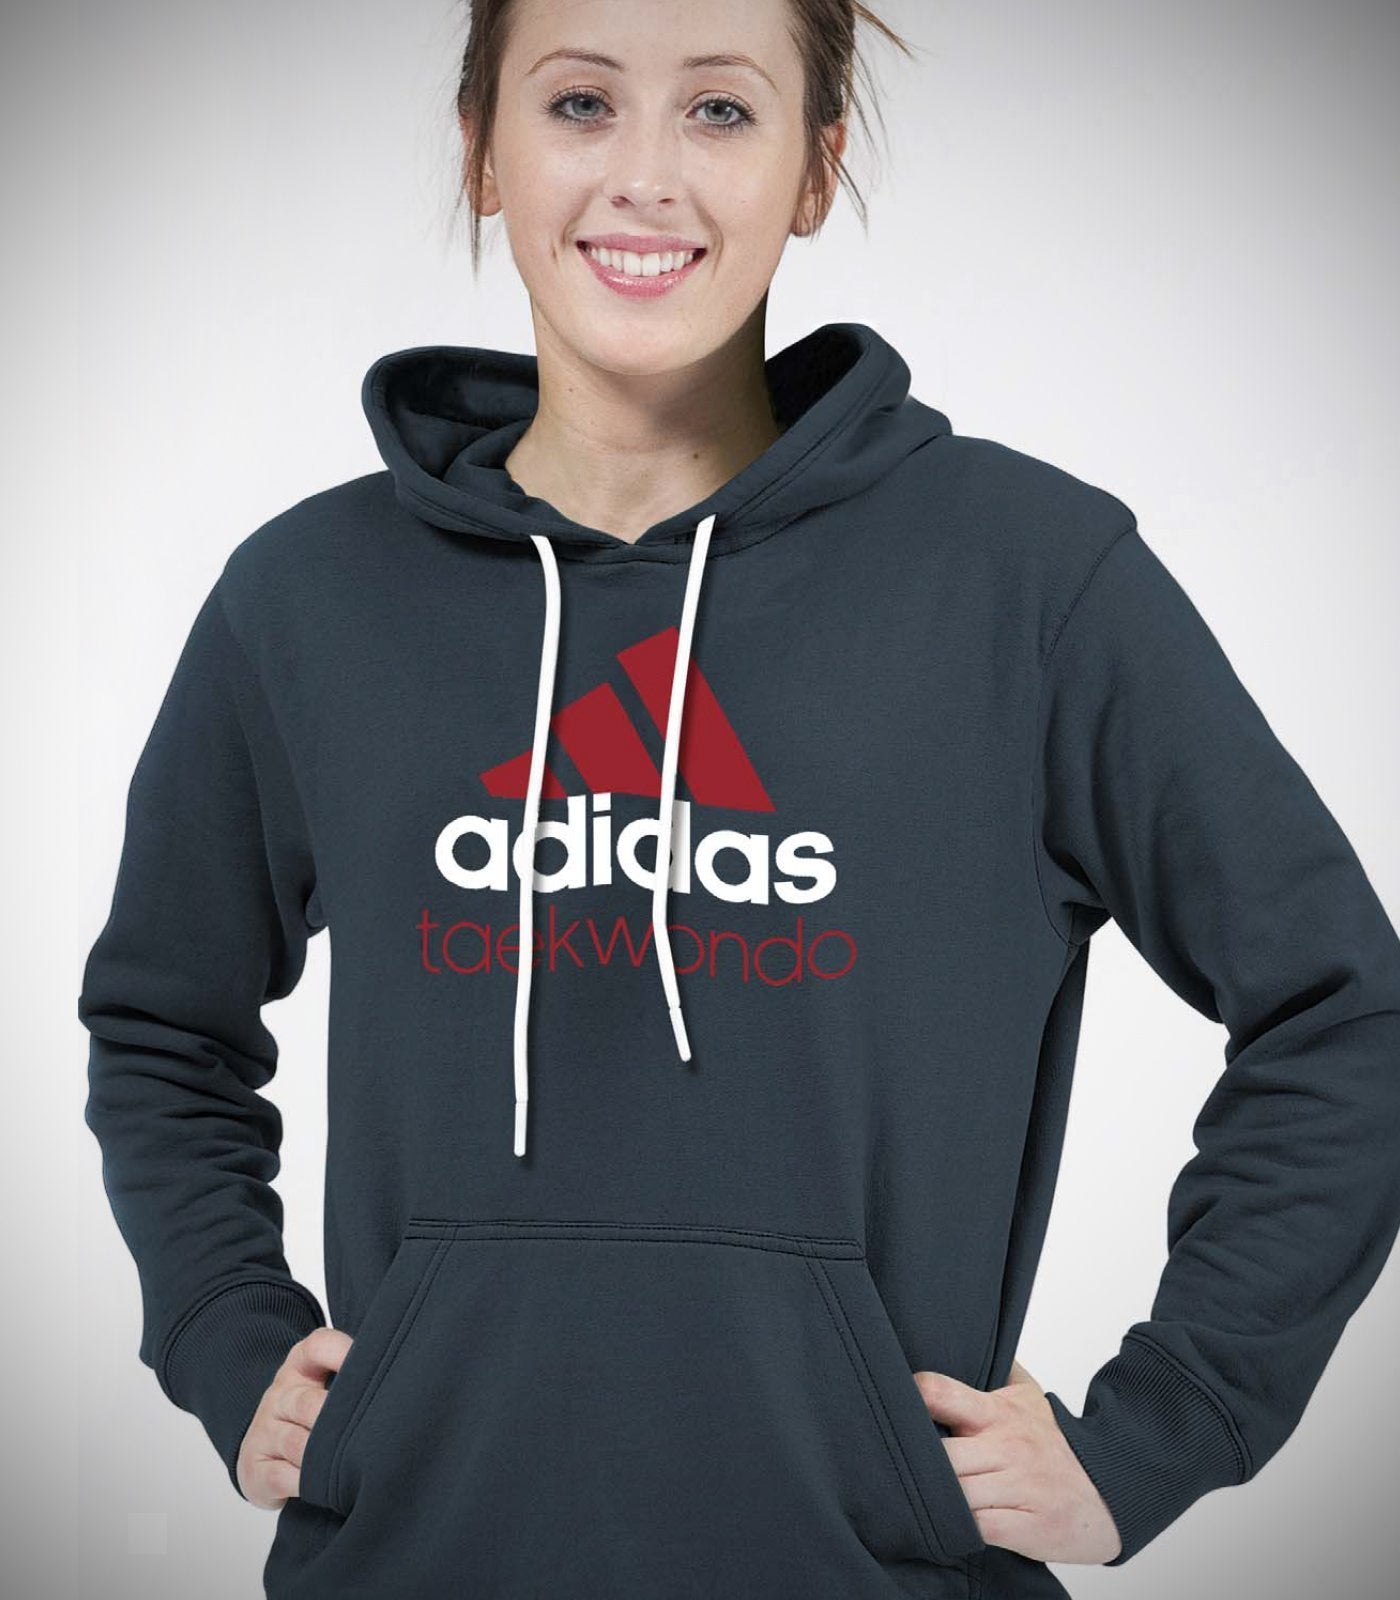 adidas kickboxing hoodie